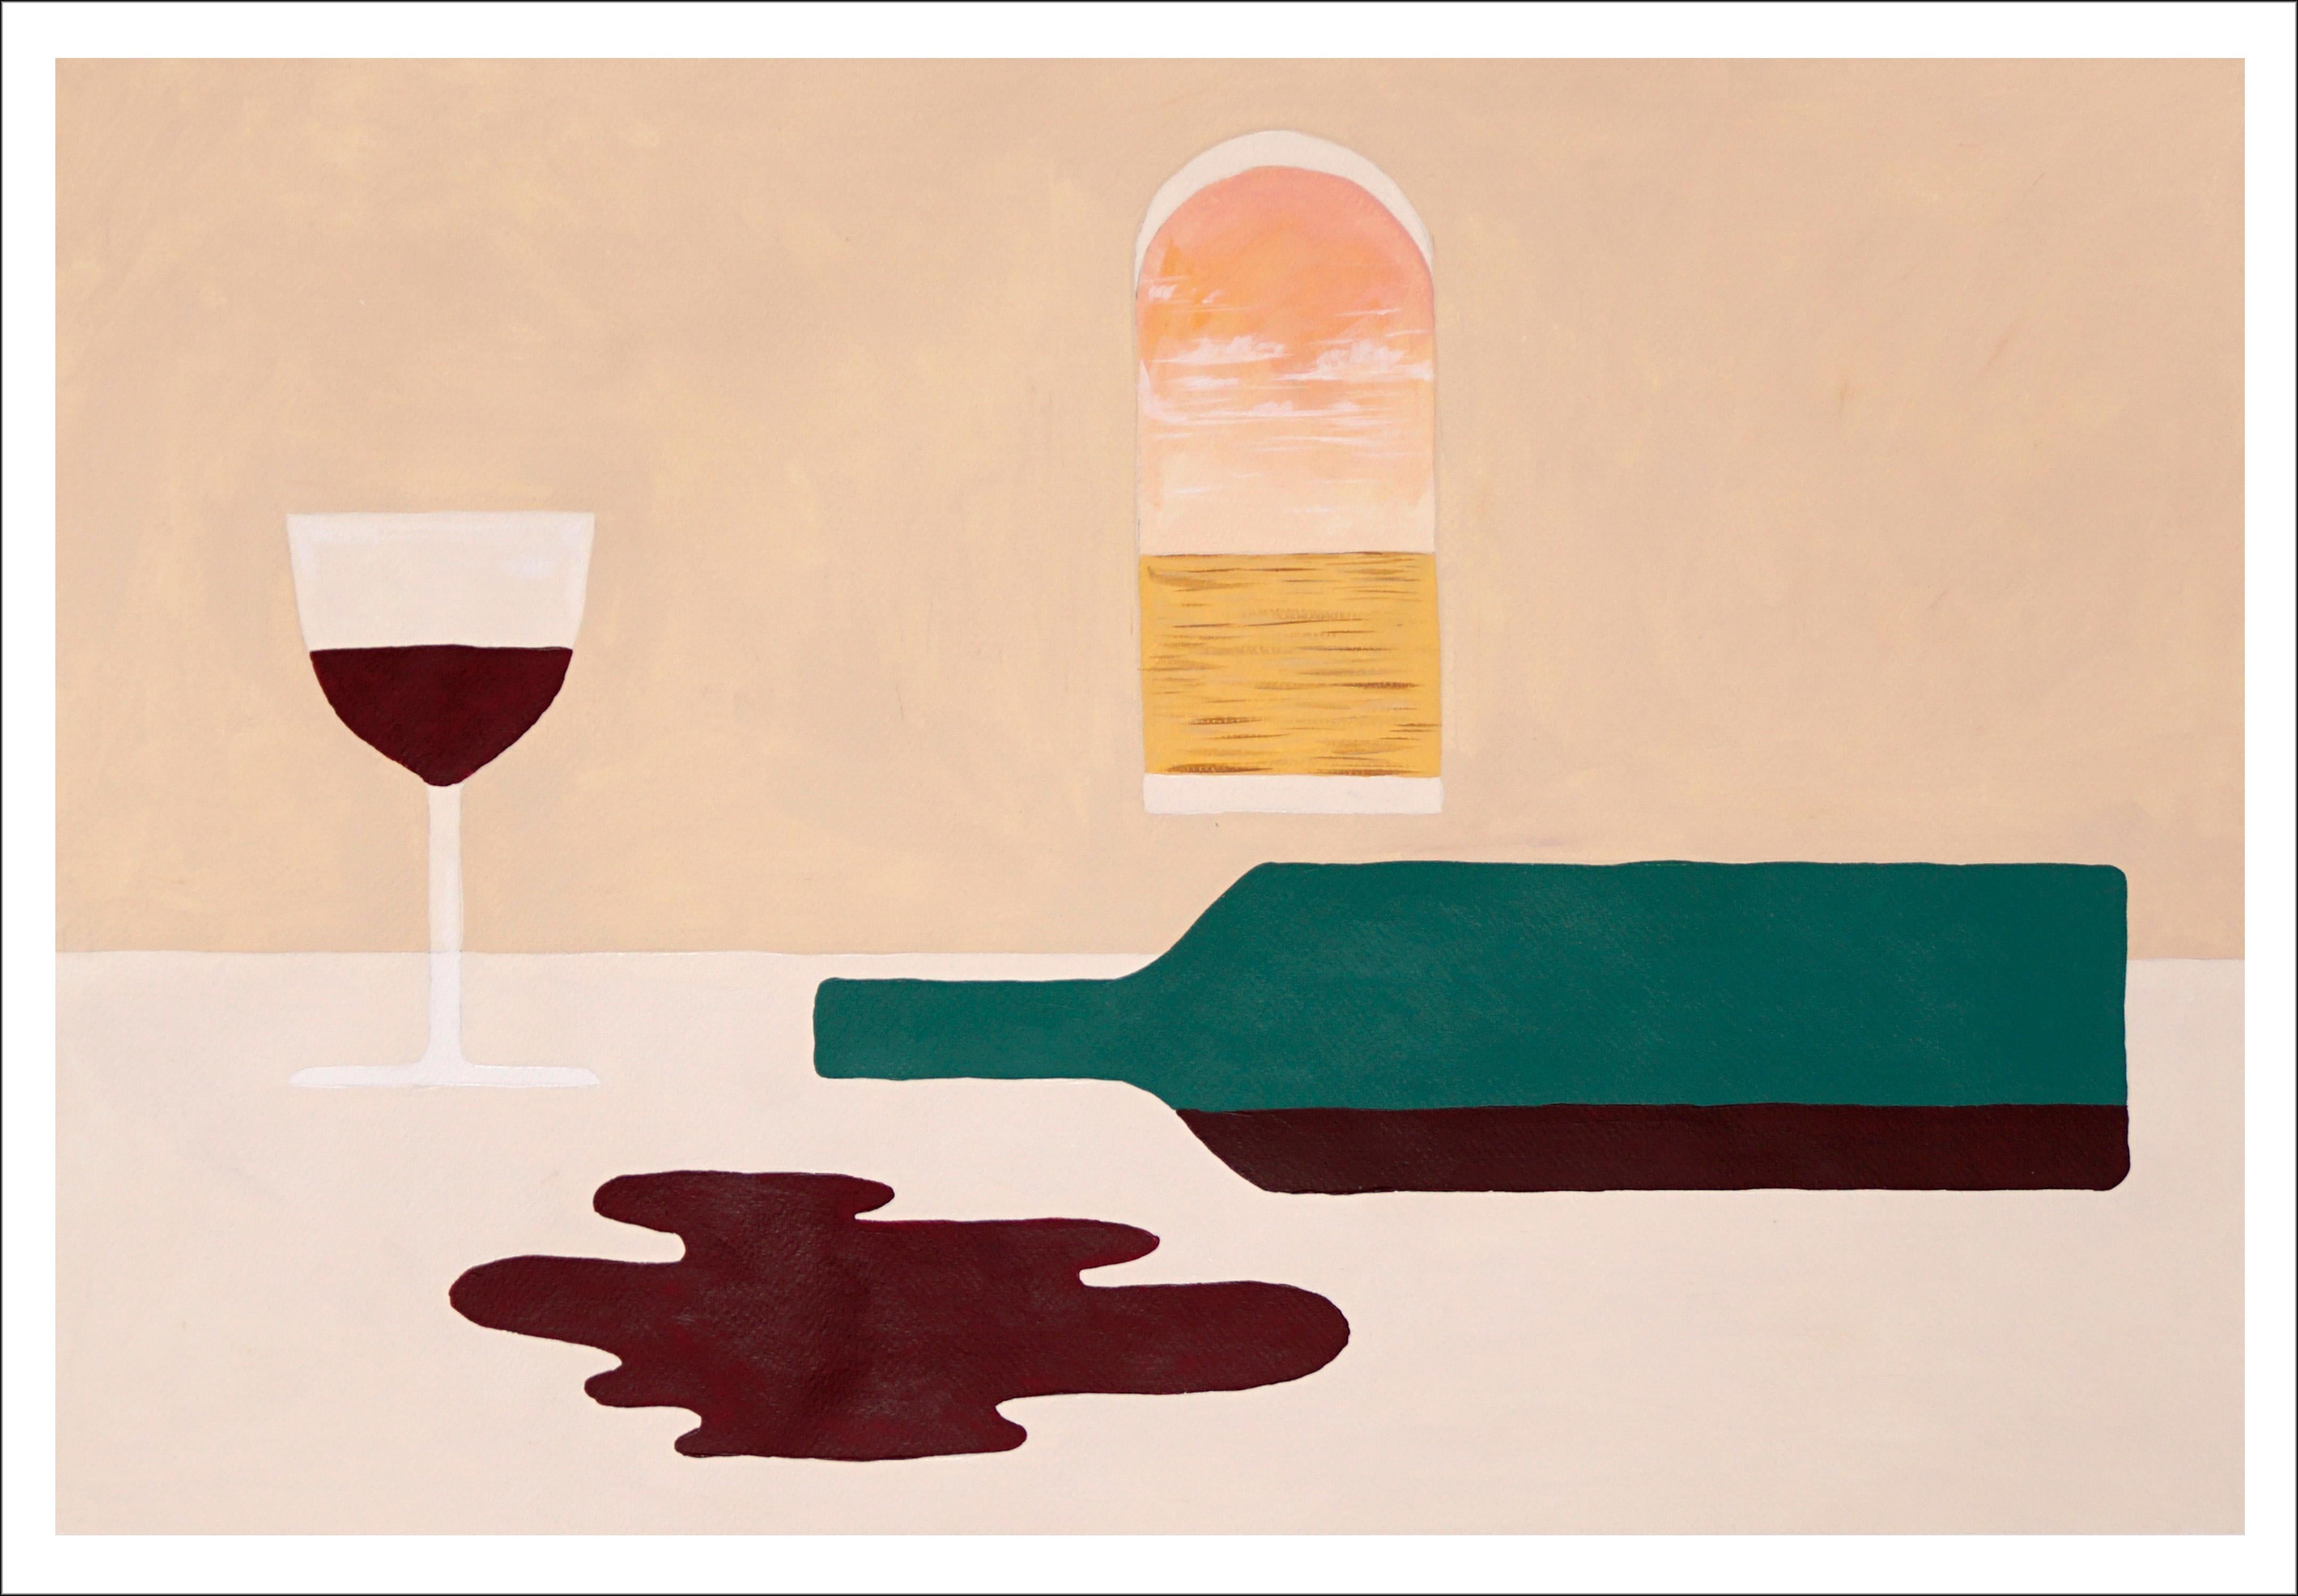 Empty-Flasche mit Wein, horizontales modernes Stillleben in Erdtönen, Ansichten aus der Toskana